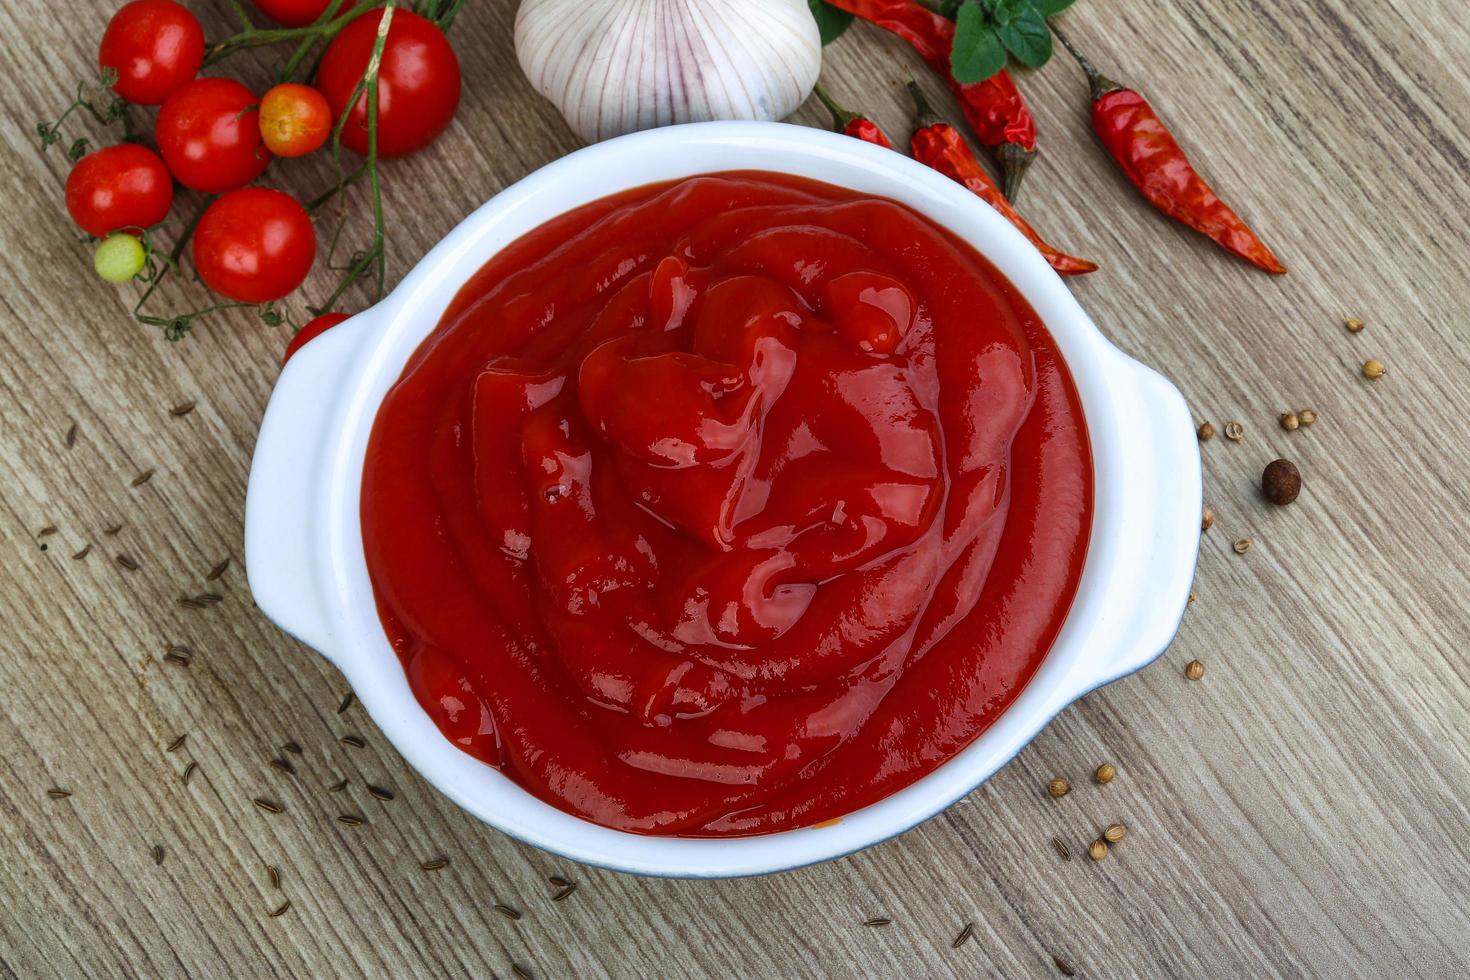 ketchup de tomate en un recipiente sobre fondo de madera foto